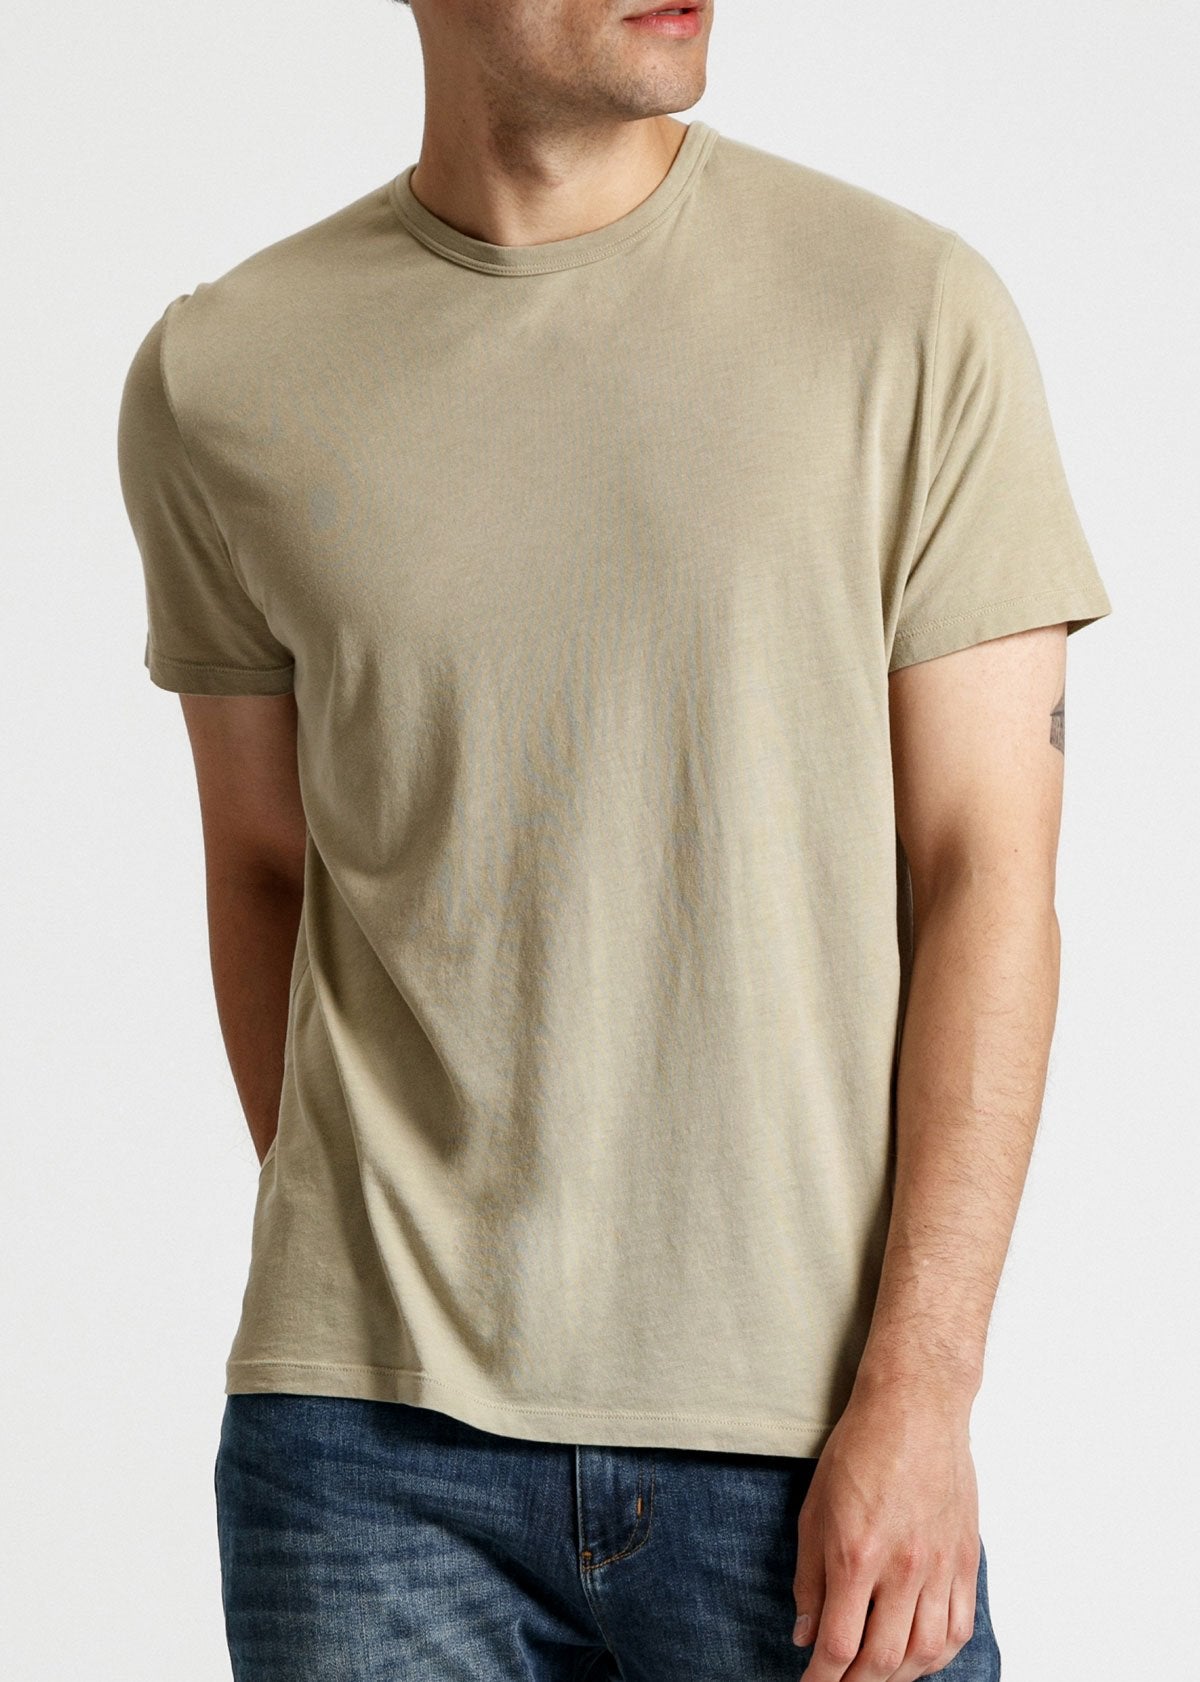 mens soft lightweight t shirt light green front